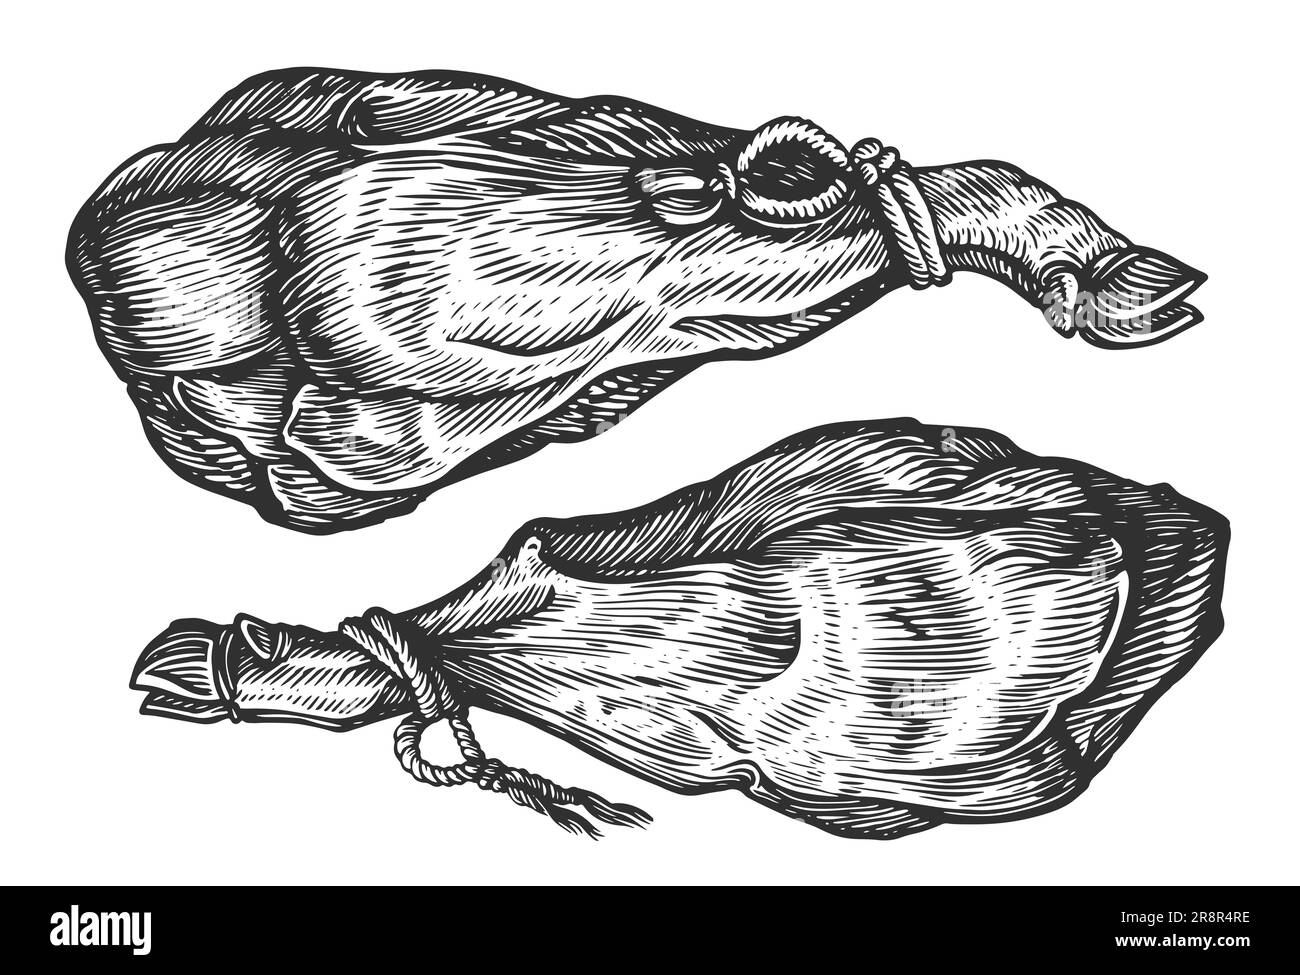 Intera gamba di prosciutto iberico spagnolo con corda. Carne secca, illustrazione di schizzo di cibo di fattoria Foto Stock